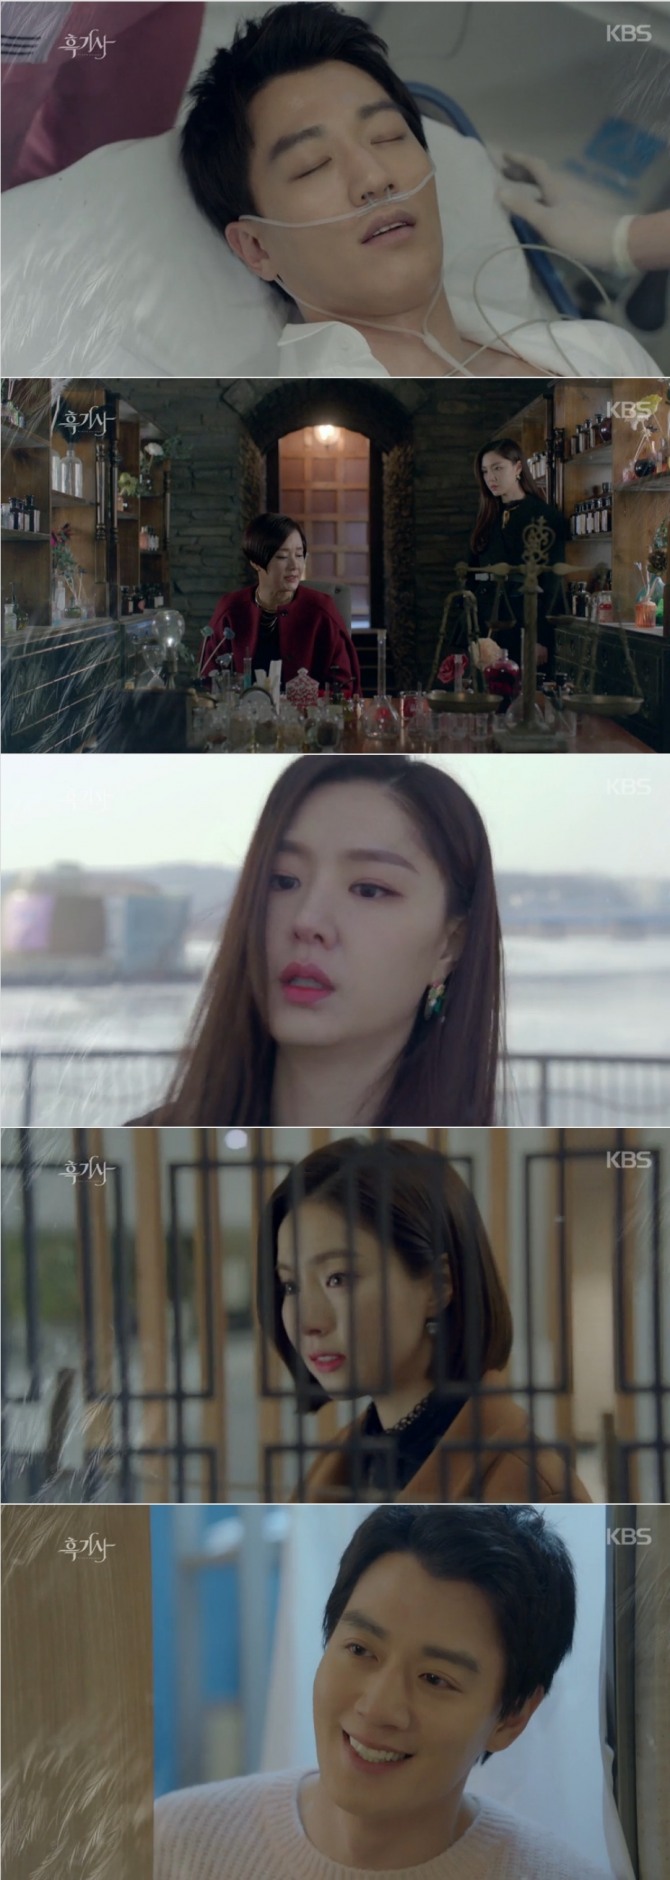 31일 오후 방송되는 KBS2 수목드라마 '흑기사' 17회에서는 문수호(김래원 분)가 의식을 회복하는 반전이 예상된다. 사진=KBS 영상 캡처 